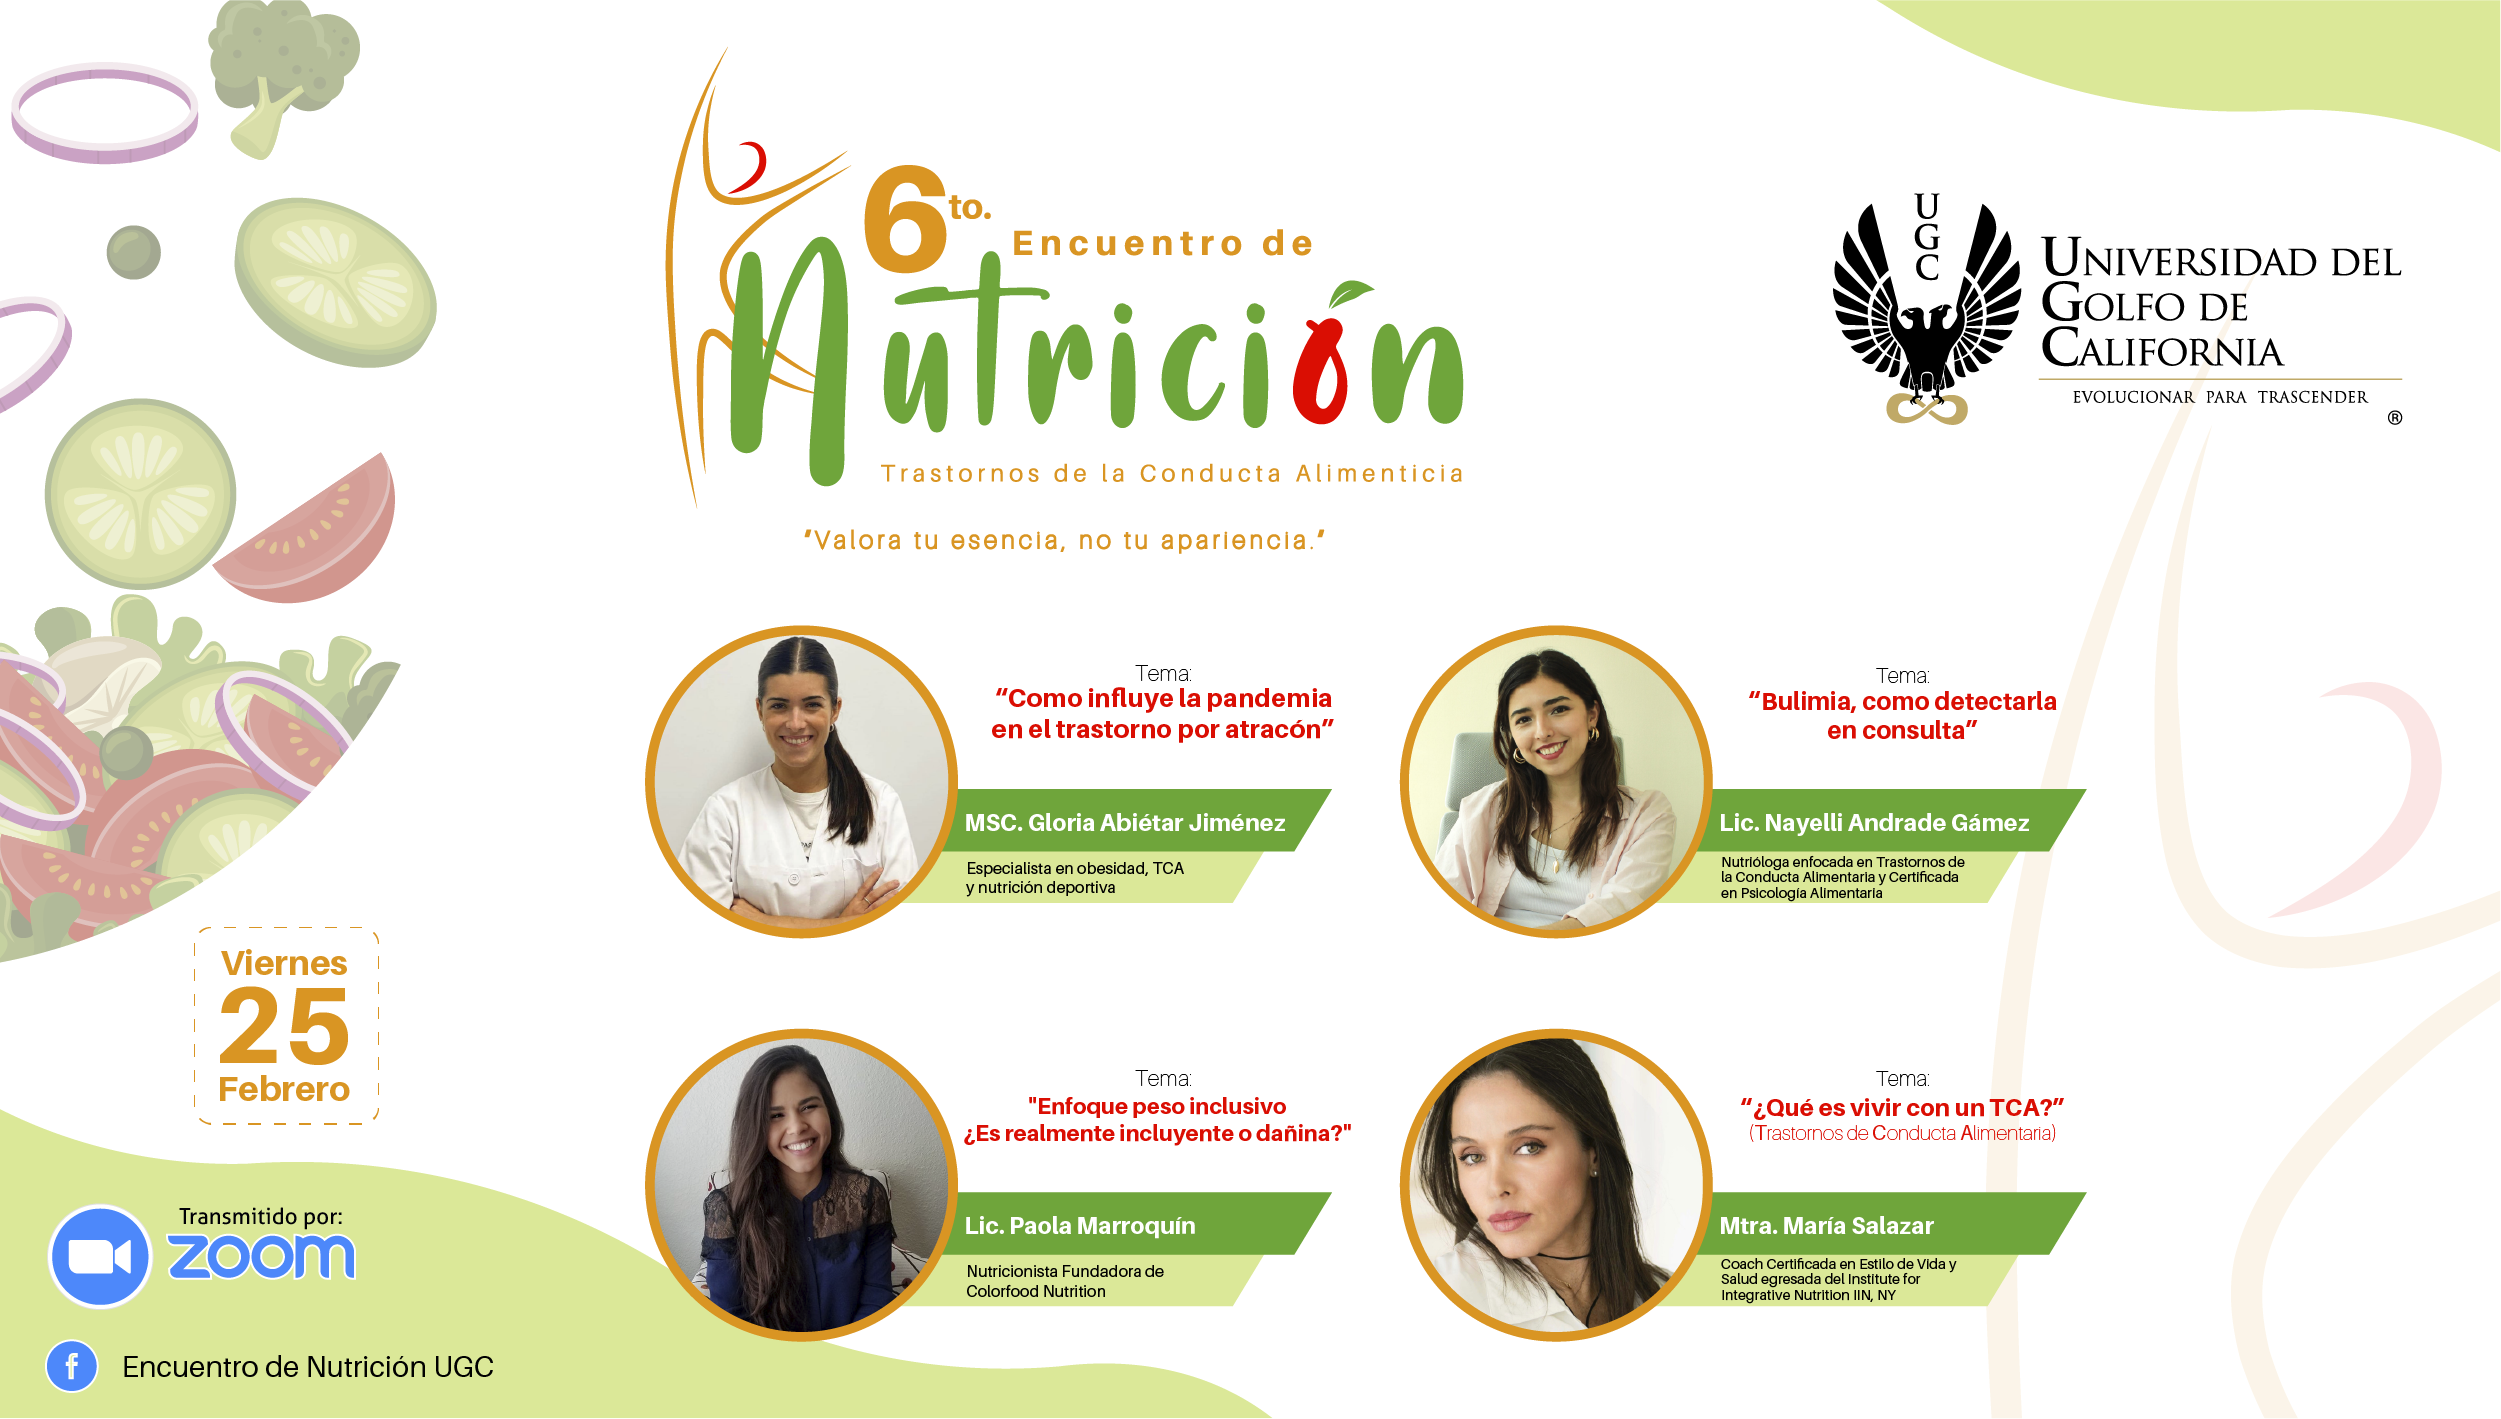 6to. Encuentro de Nutrición UGC 2022 denominado "Trastornos de la Conducta Alimenticia"